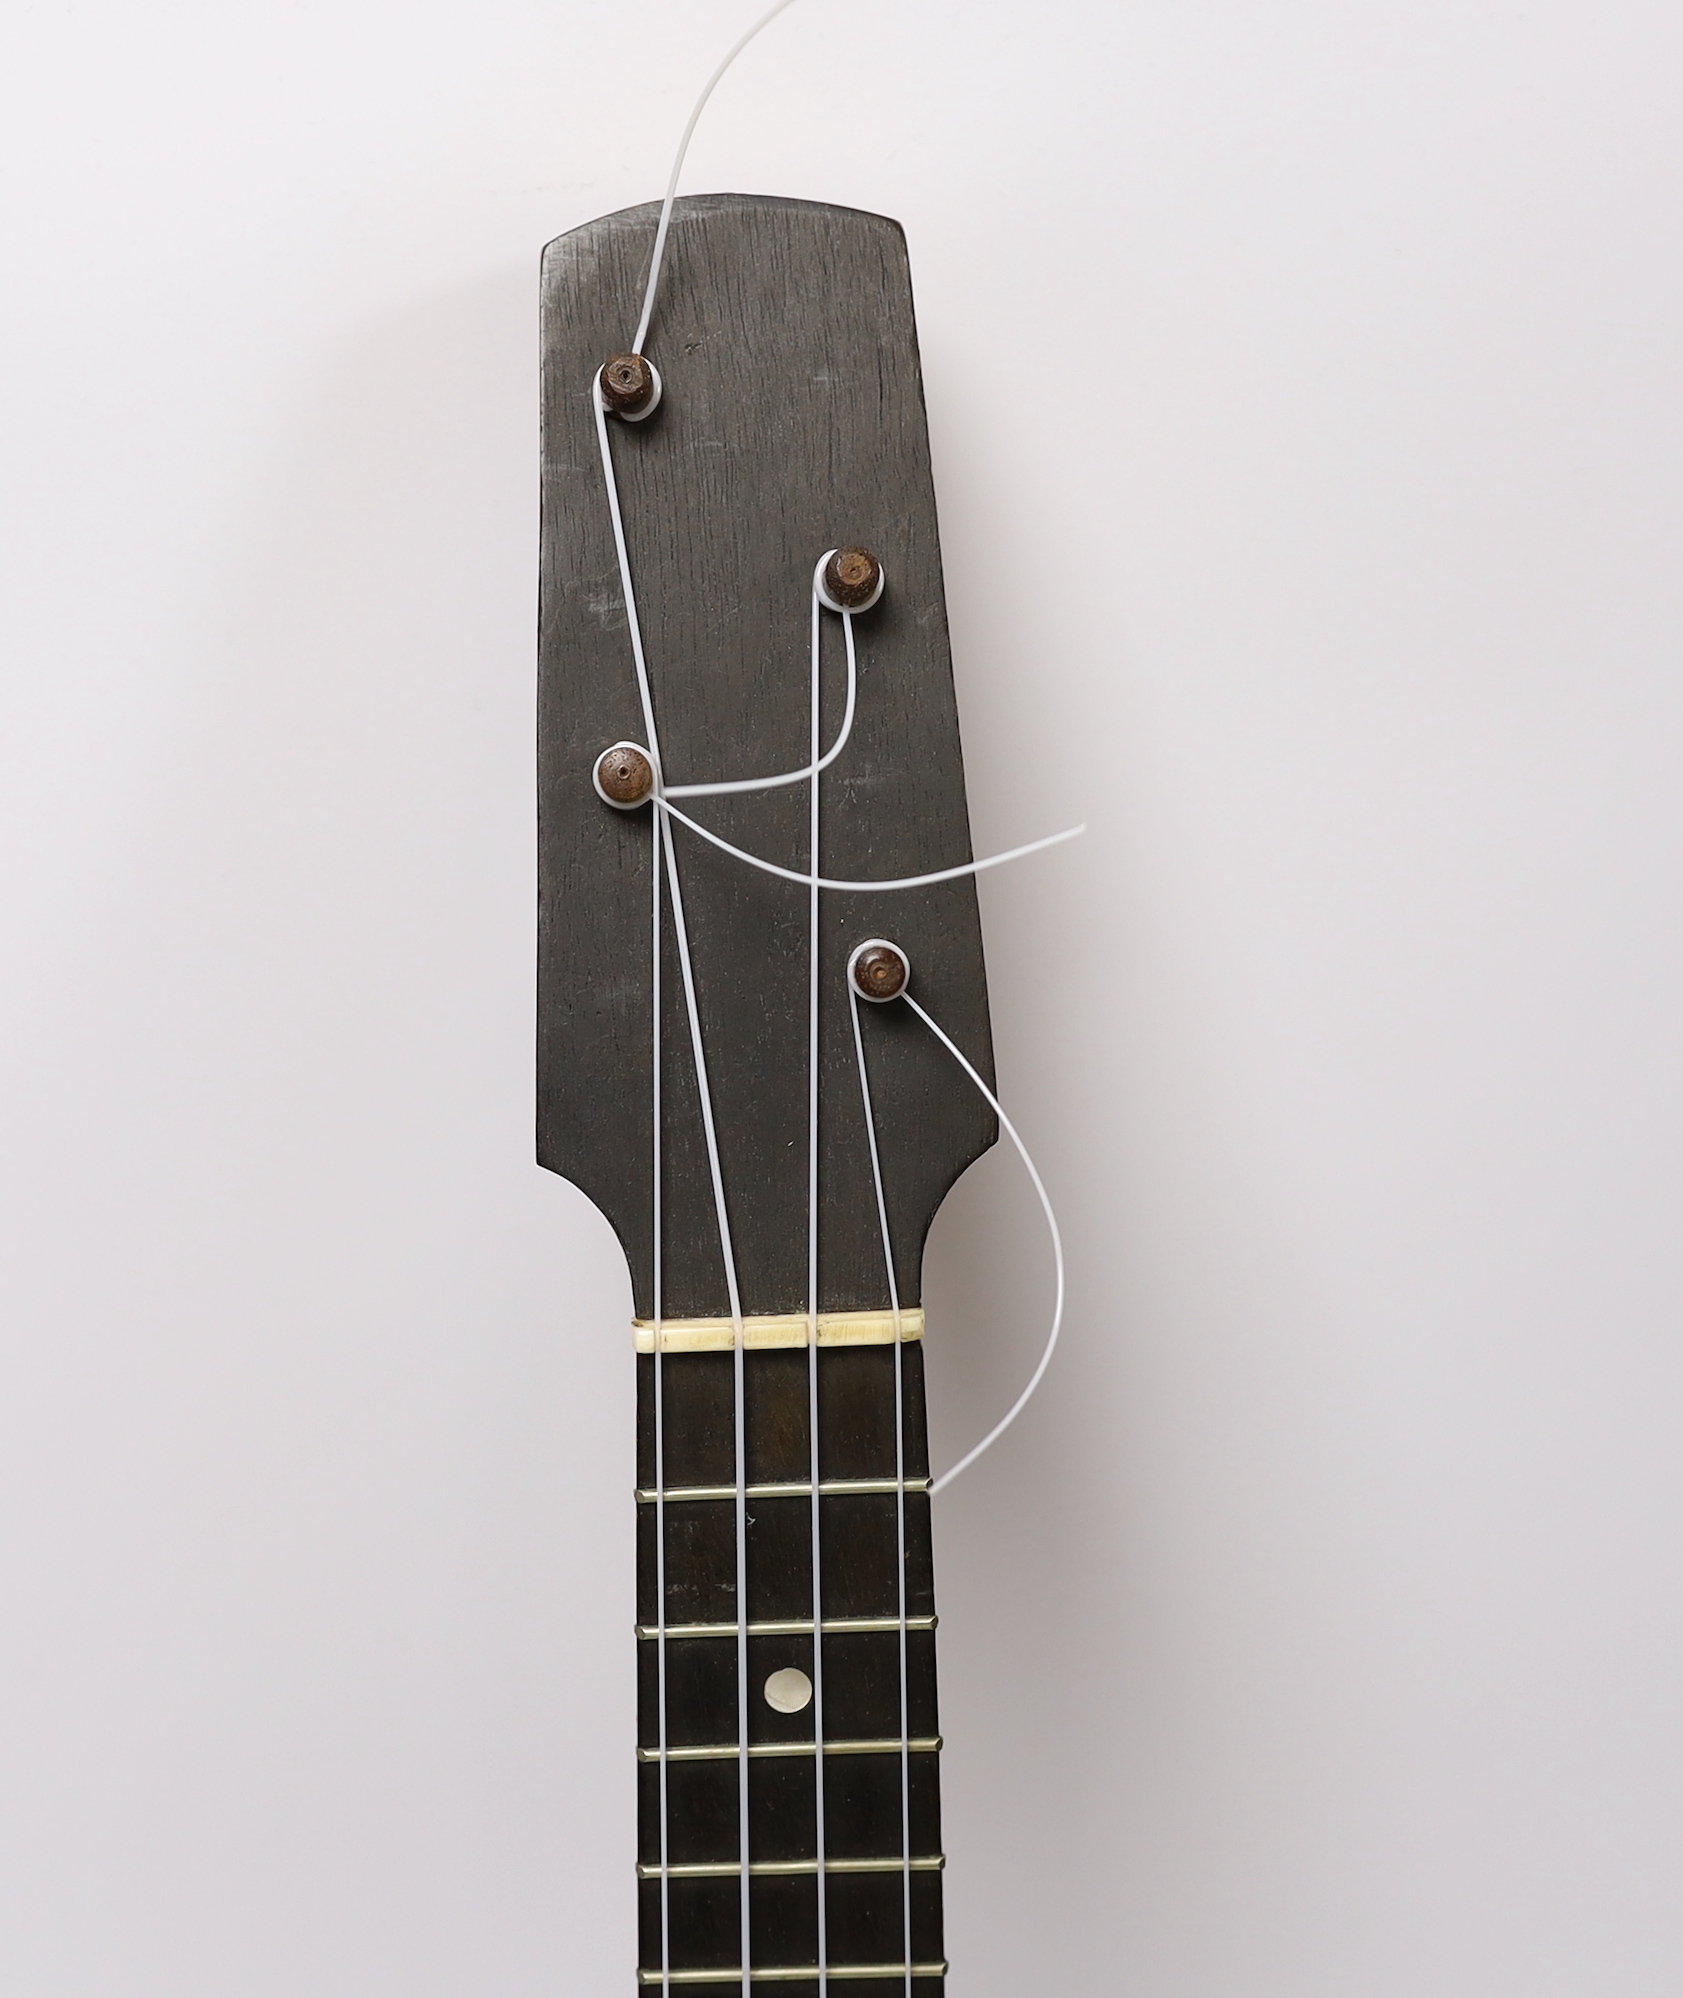 A cased banjo ukulele